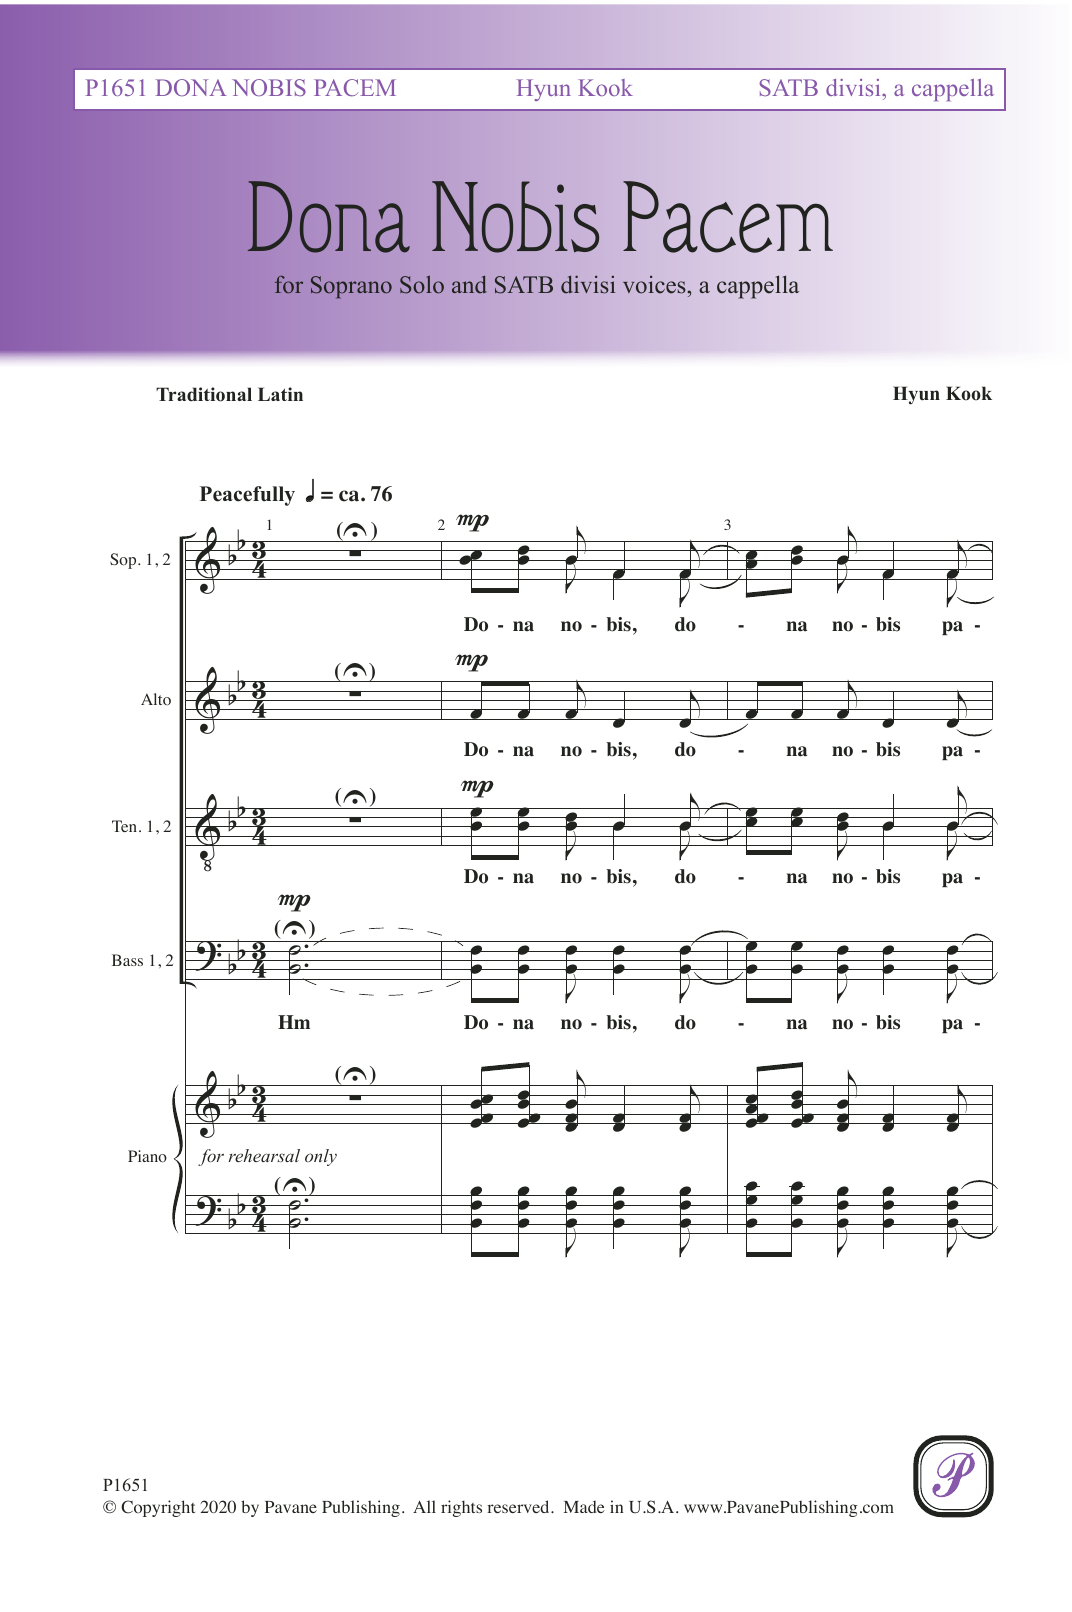 Hyun Kook Dona Nobis Pacem Sheet Music Notes & Chords for Choir - Download or Print PDF